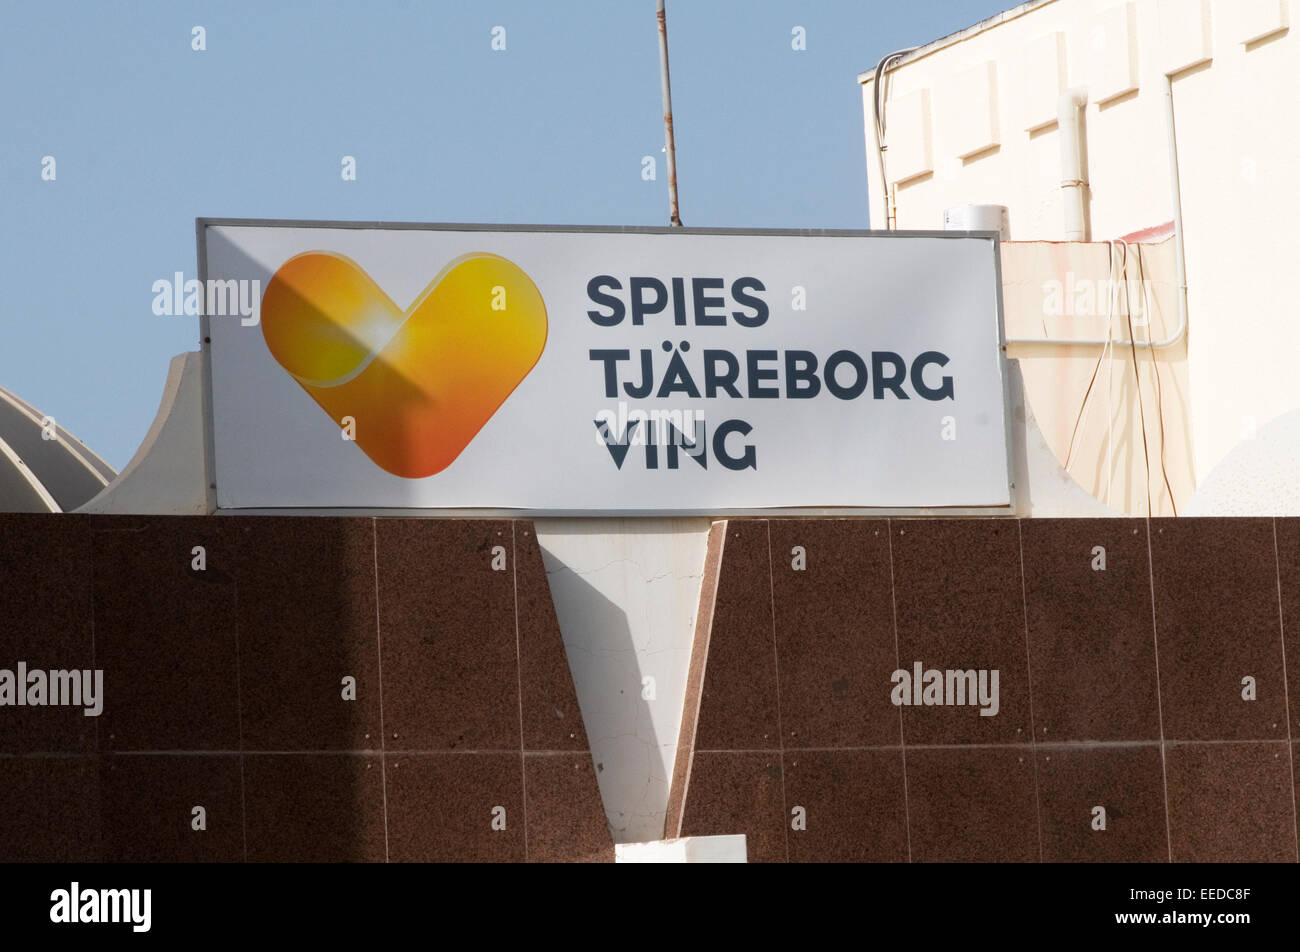 Tjareborg espions tour opérateur danois ving agents agent de voyage Thomas Cook nom commercial du nord de l'Europe scandinave danemark suè Banque D'Images